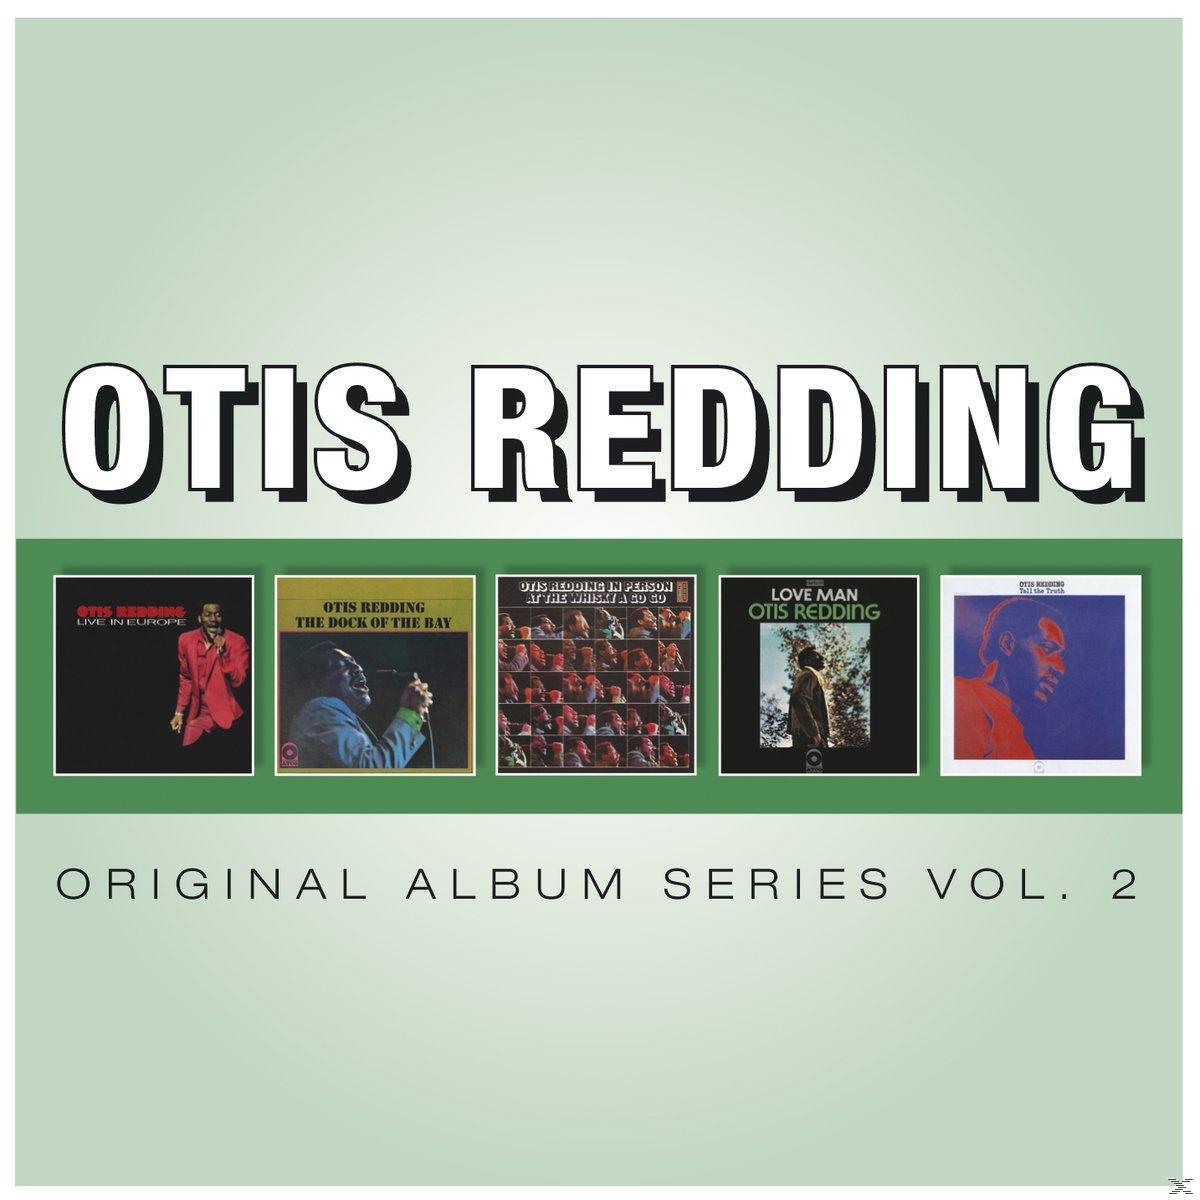 - Original - (CD) 2 Vol. Series Redding Otis Album